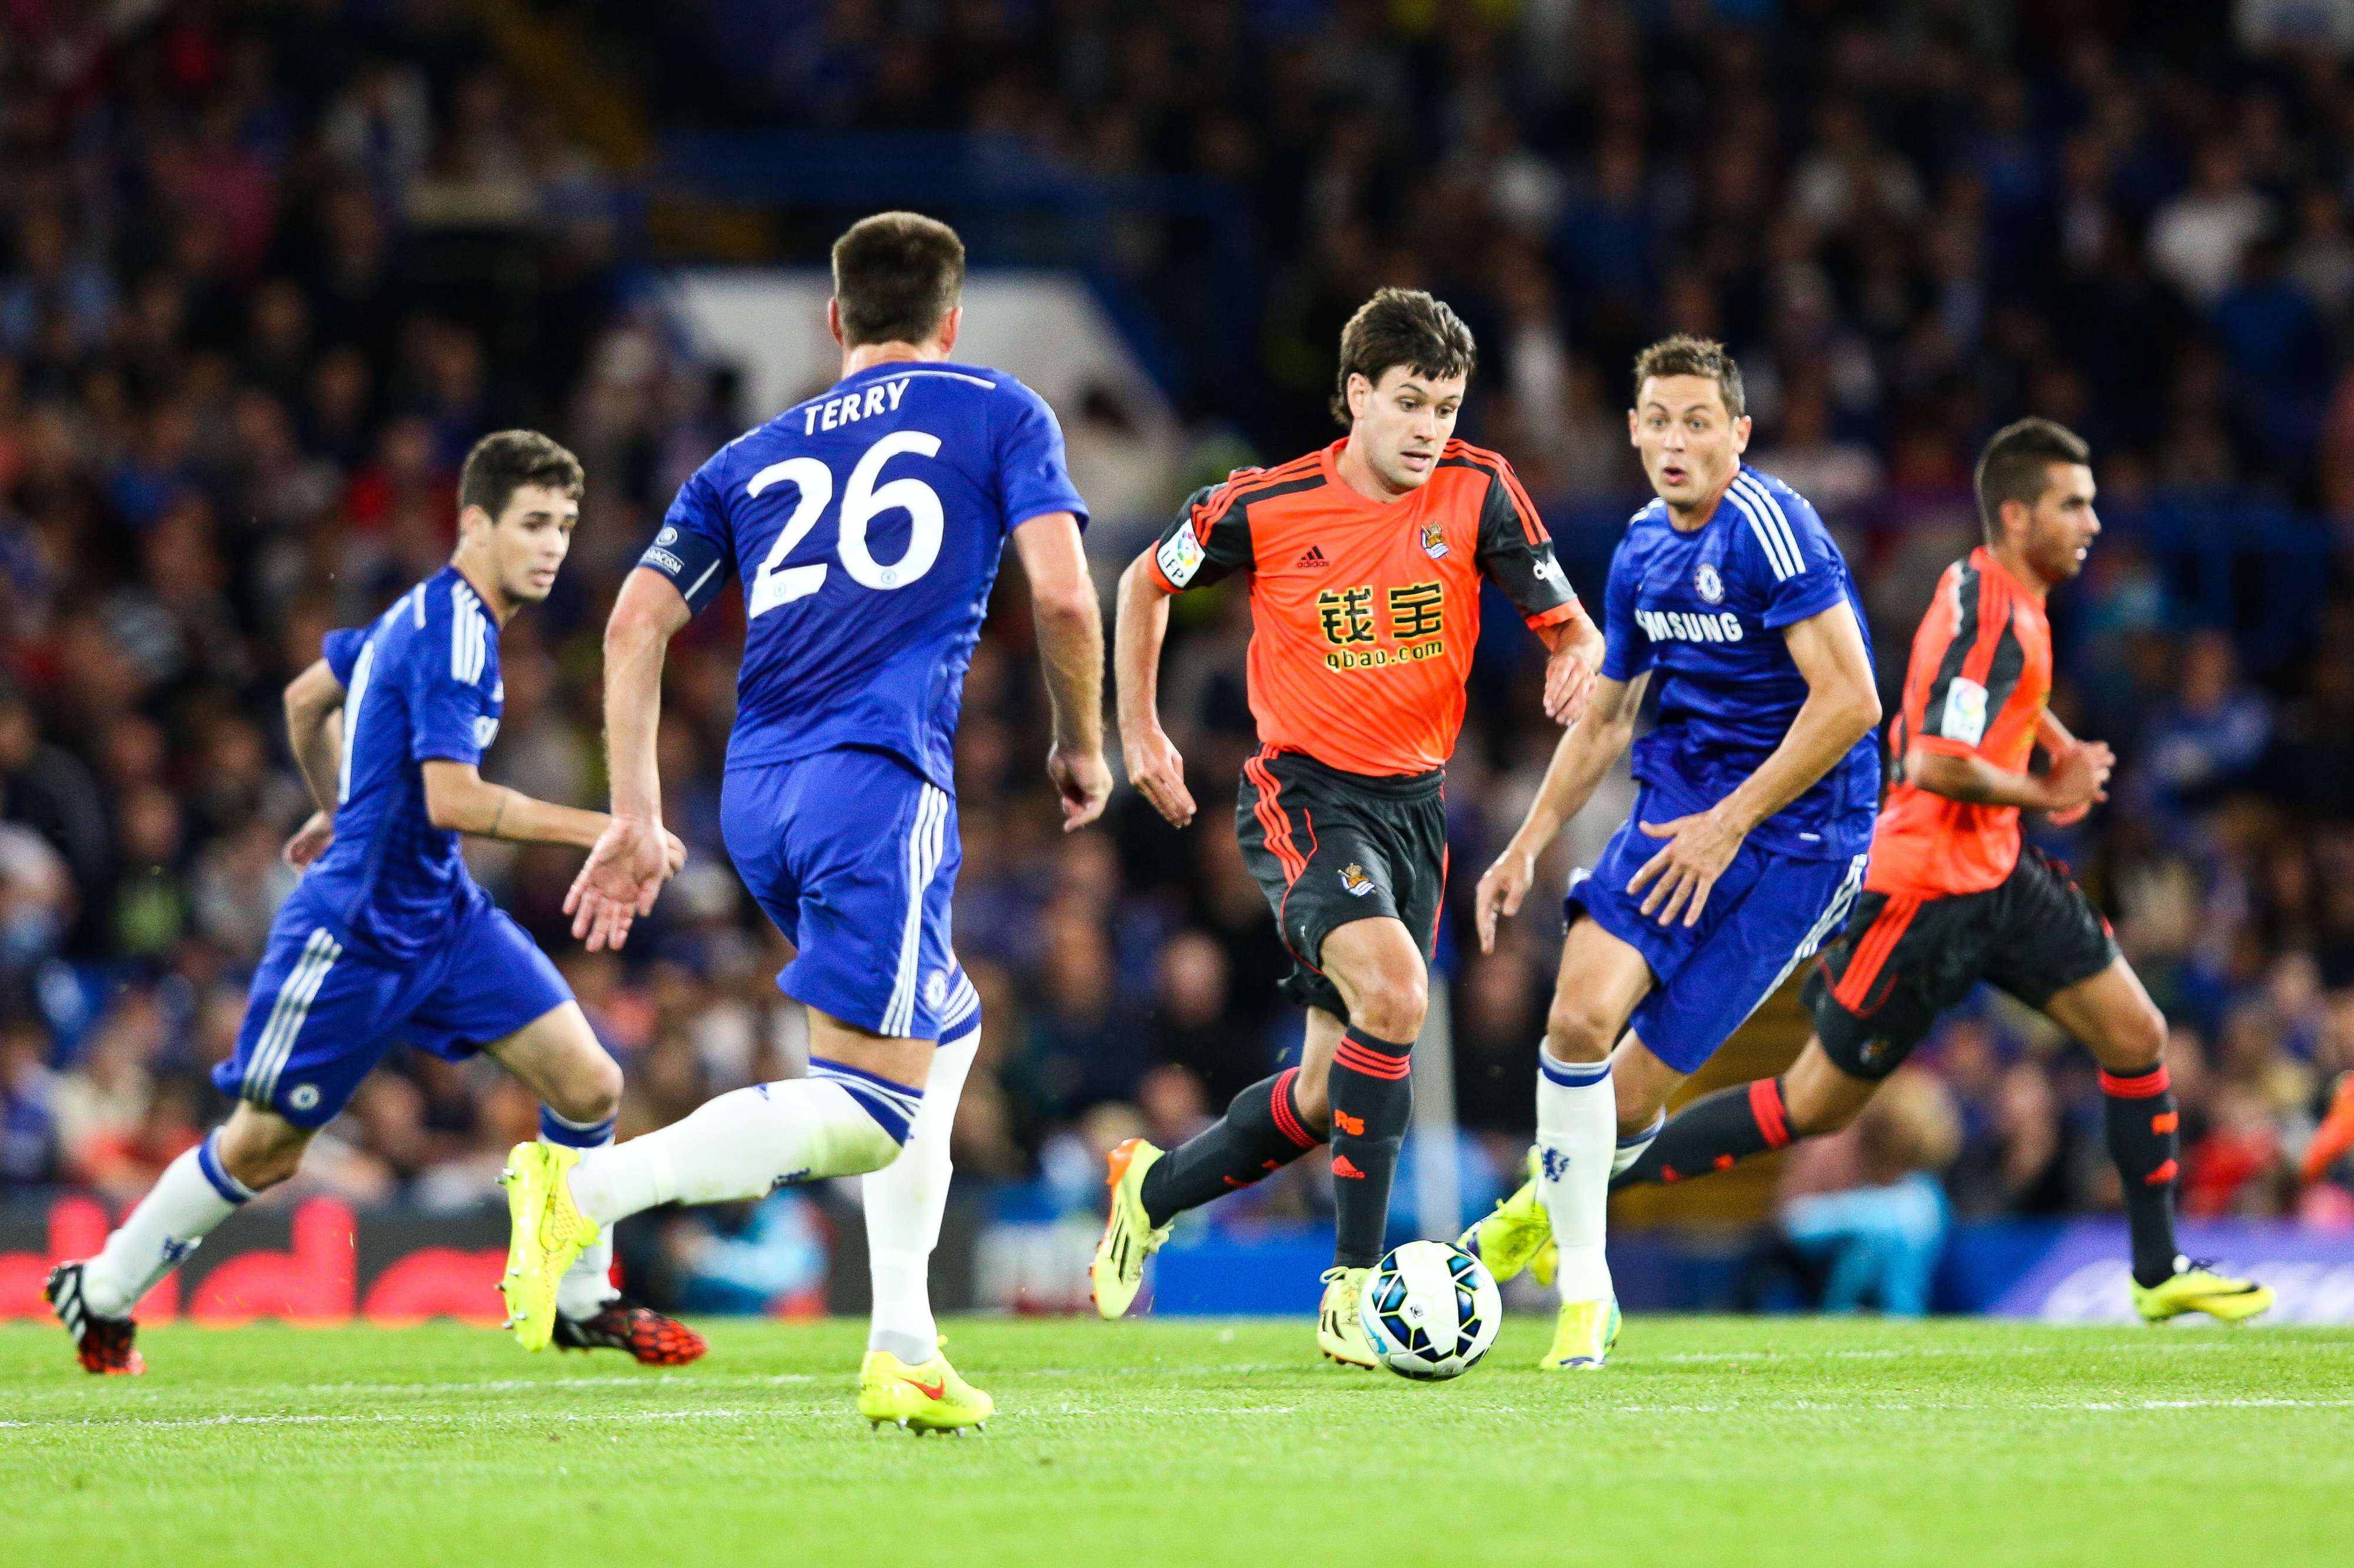 Iker Hernández conduce el balón ante Terry, con Matic y Oscar observando la acción, en un amistoso ante el Chelsea.